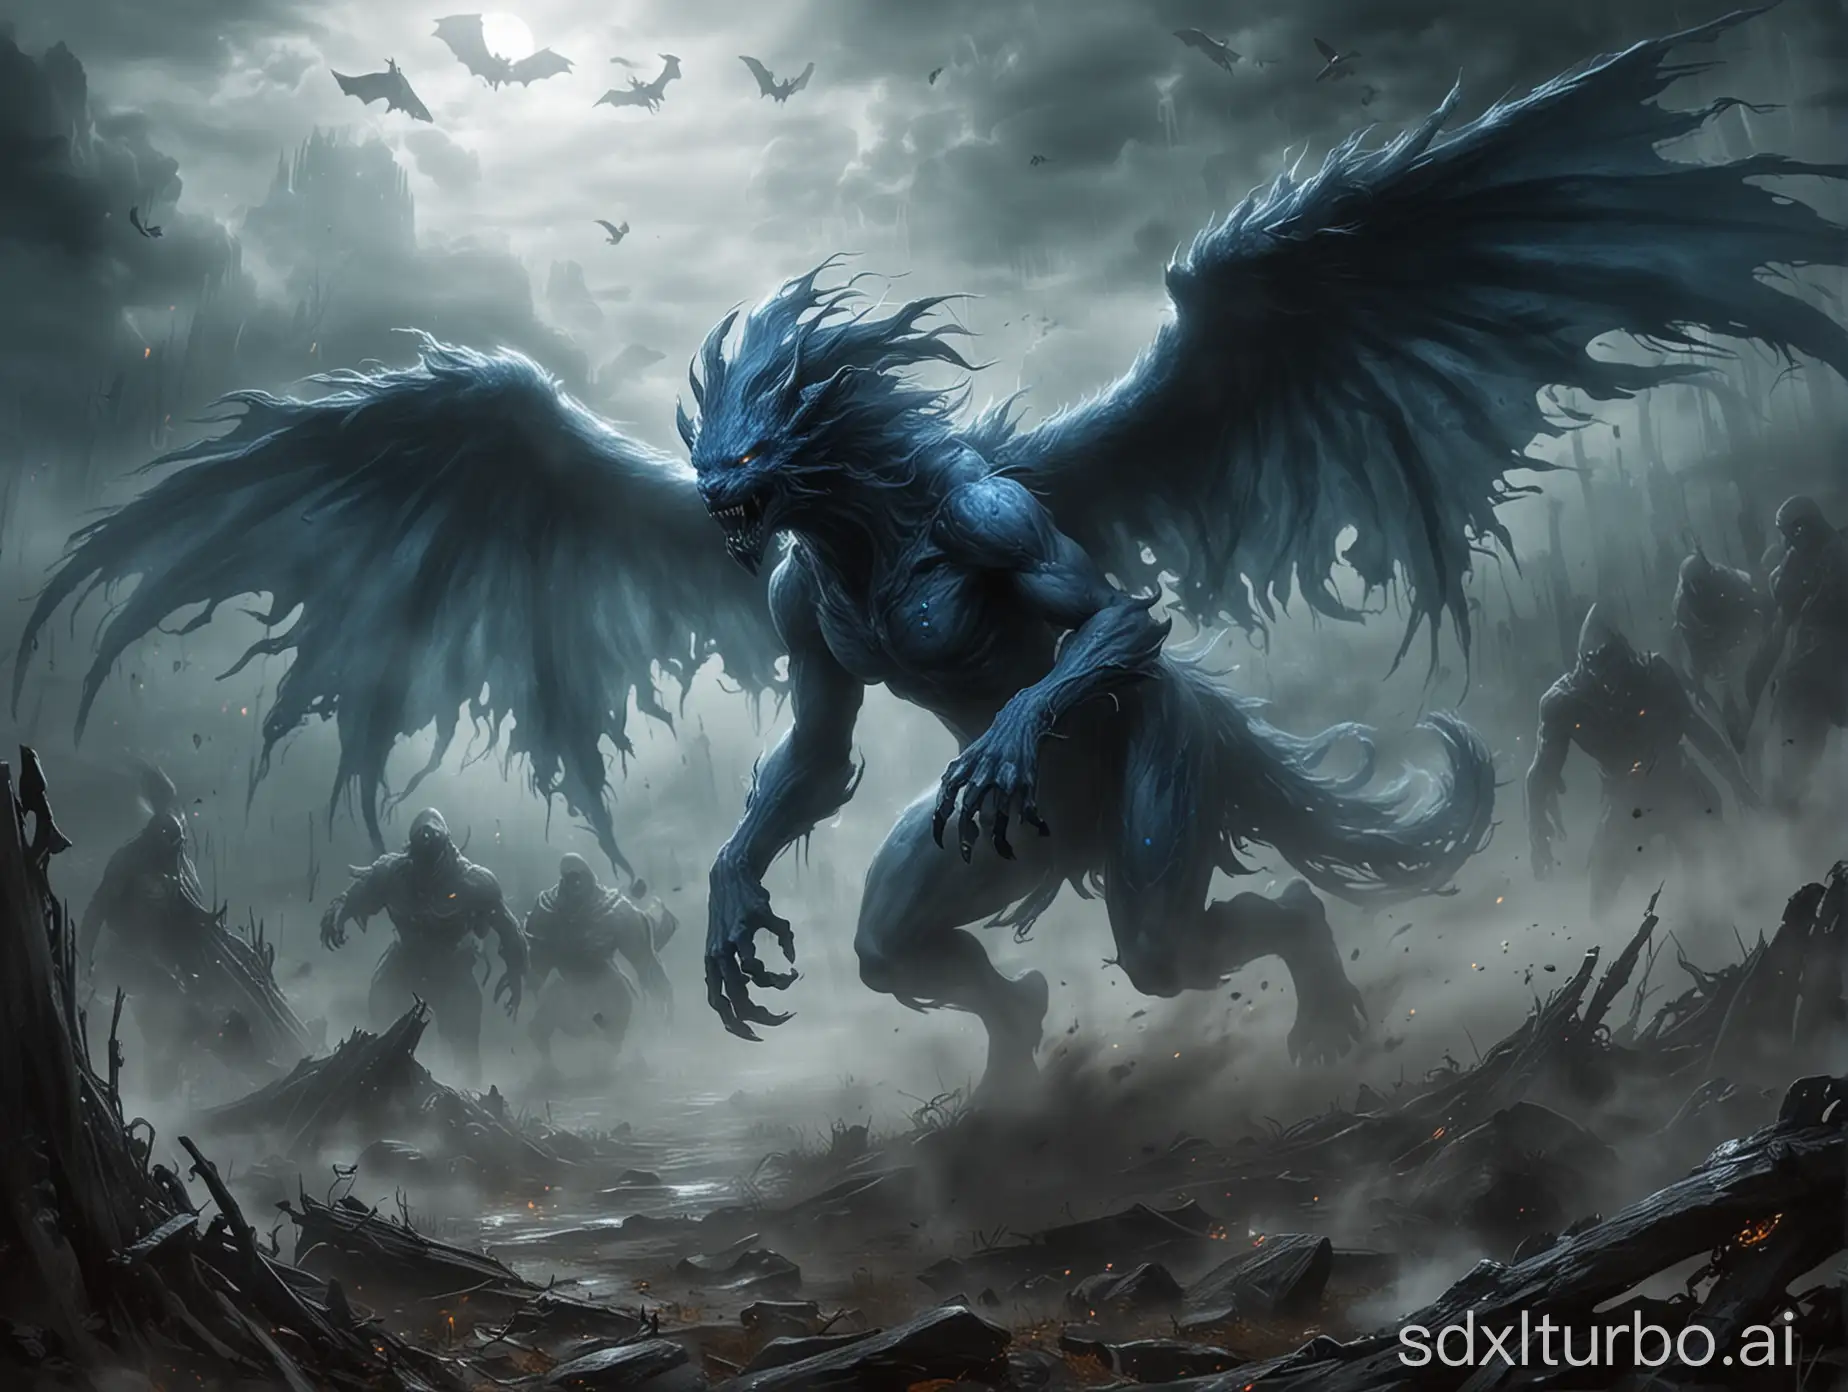 战场中，浓雾重重，无数幽魂飞舞。
一只只暗蓝魂兽迅速凝成，绝大多数都是普通魂兽，但很快便出现了荒级魂兽。看来不多久，也会形成上古魂兽。